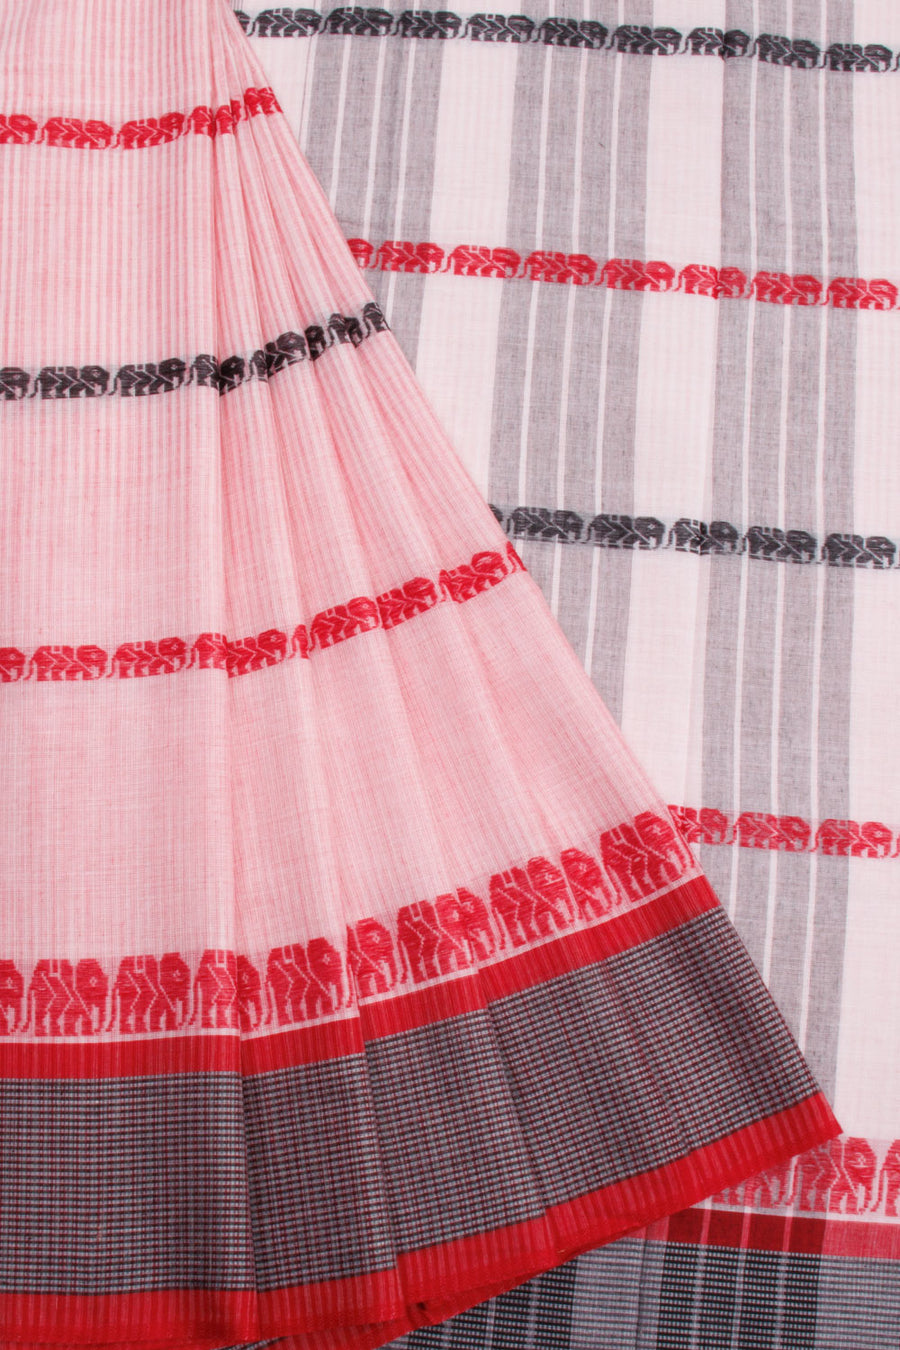 Blush Pink Handloom Dhaniakhali Cotton Saree - Avishya